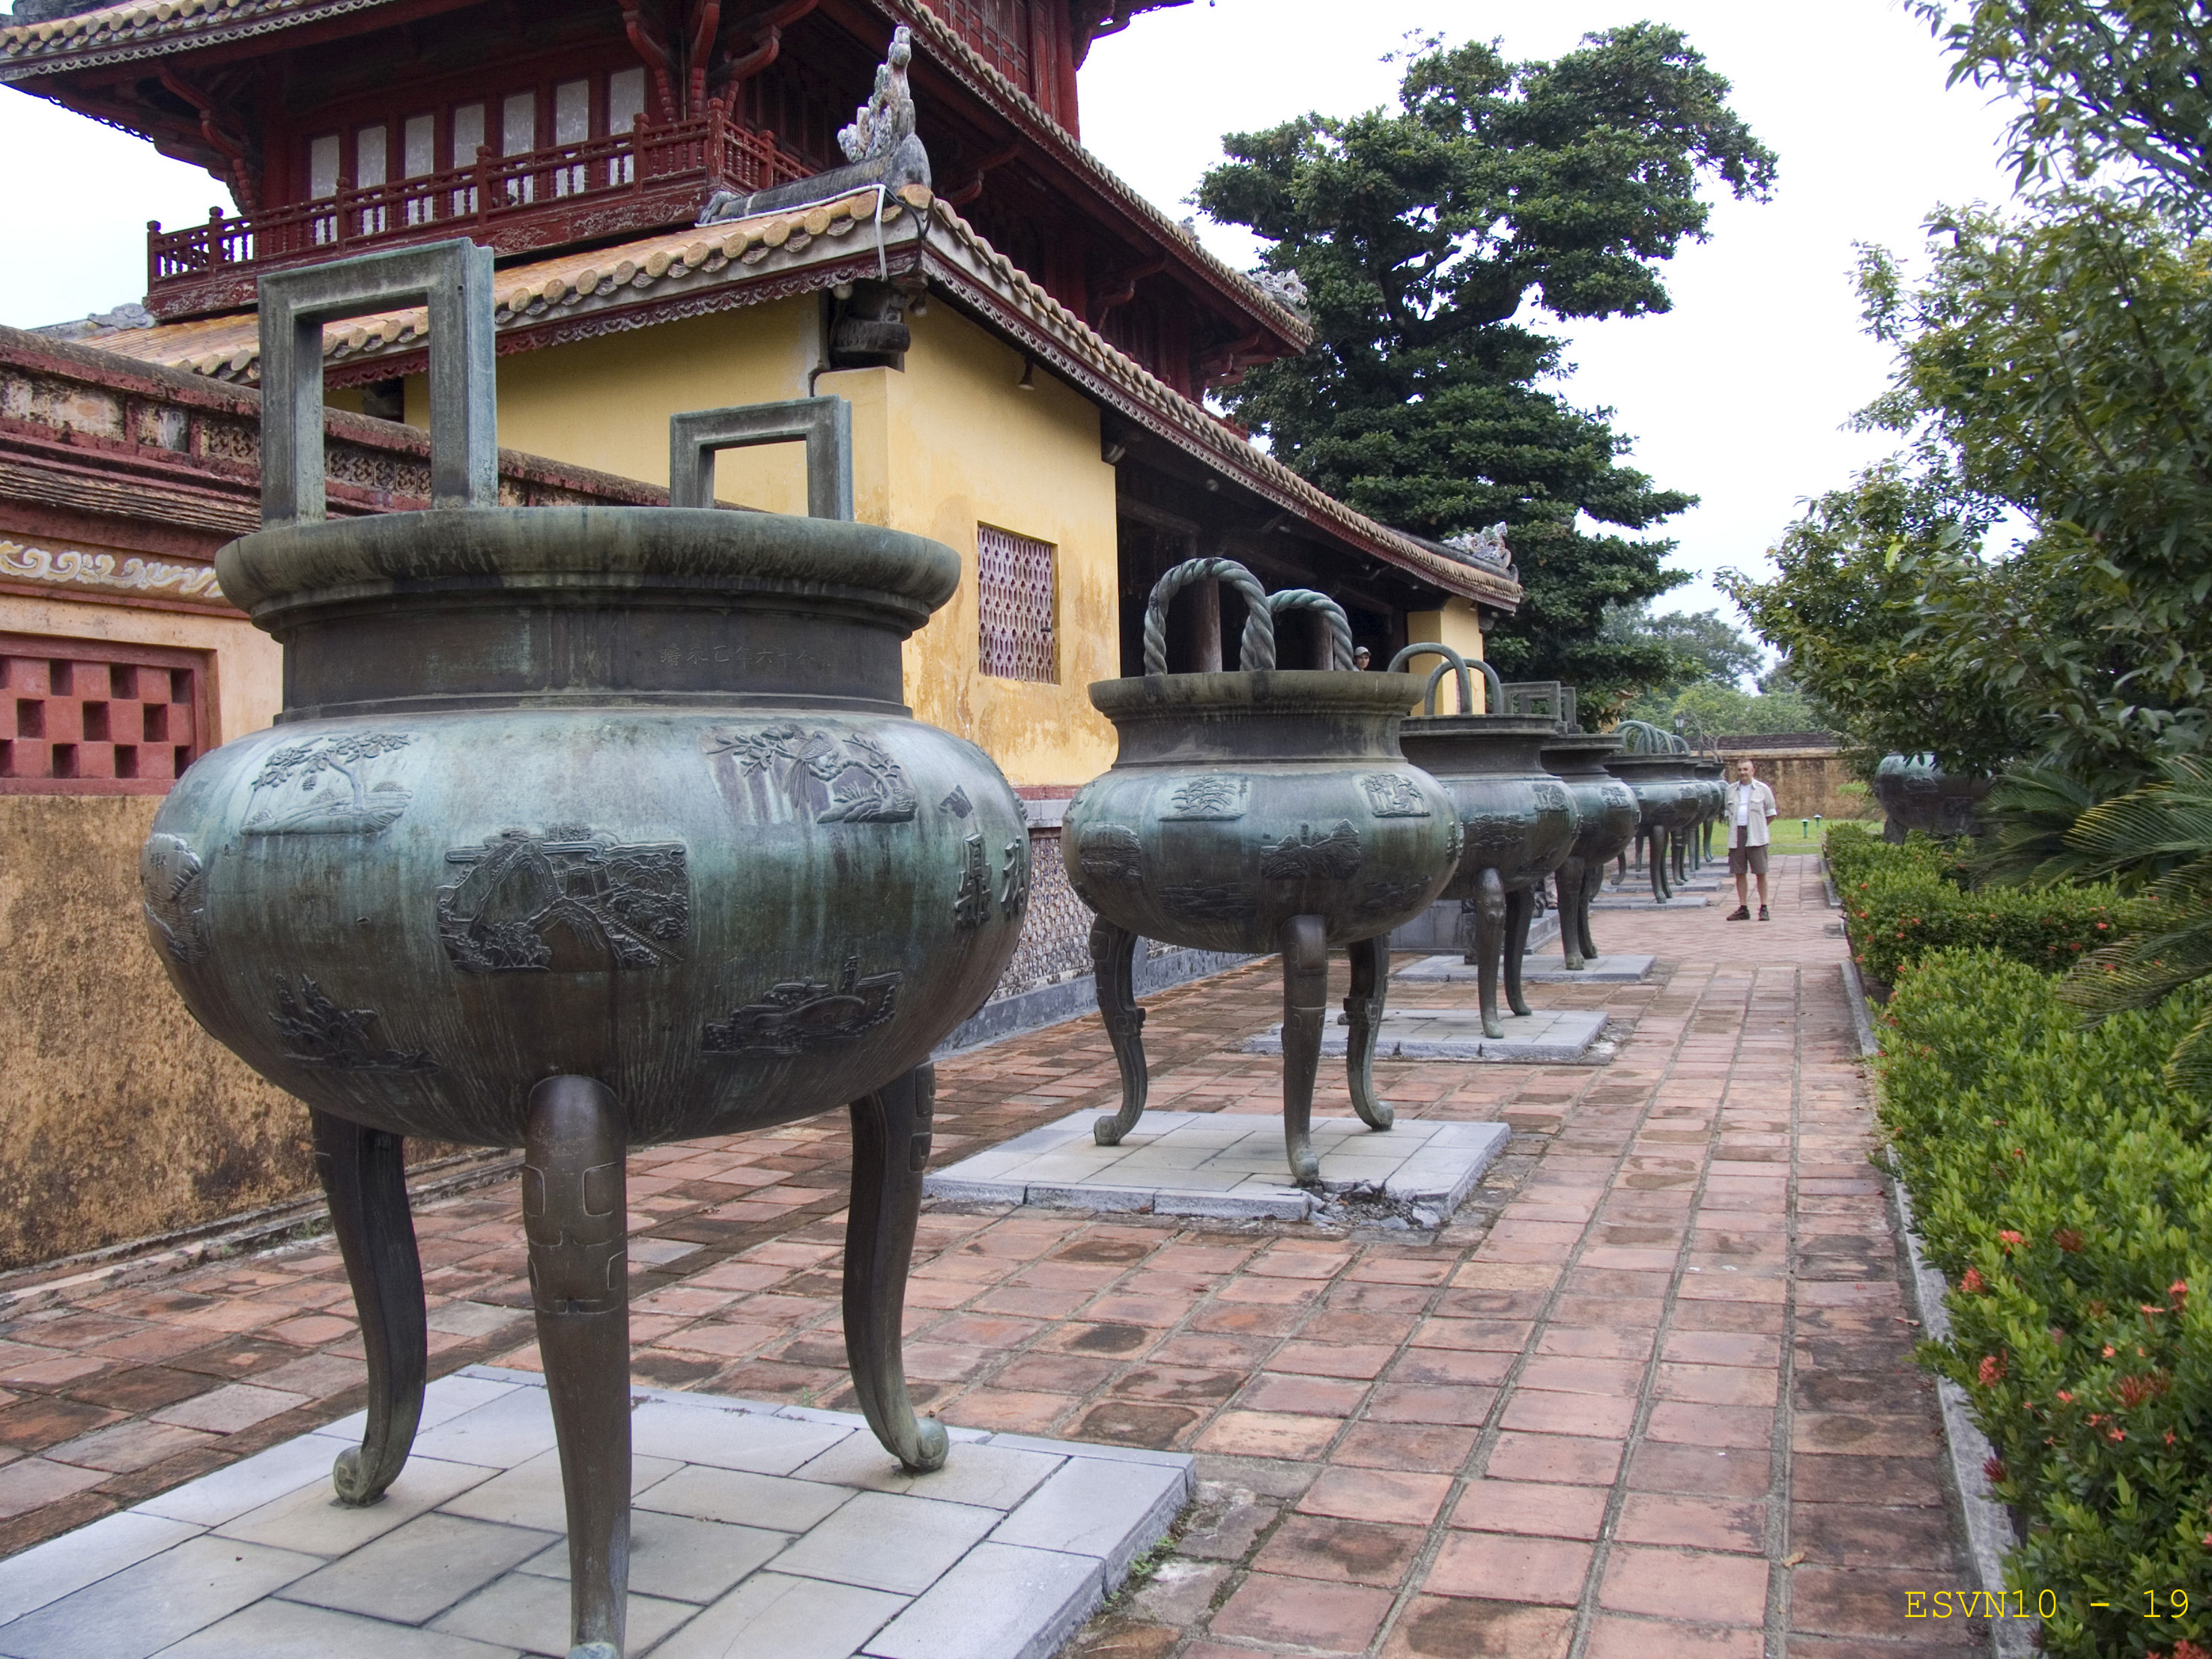  Le urne cinerarie imperiali con il Hien Lam